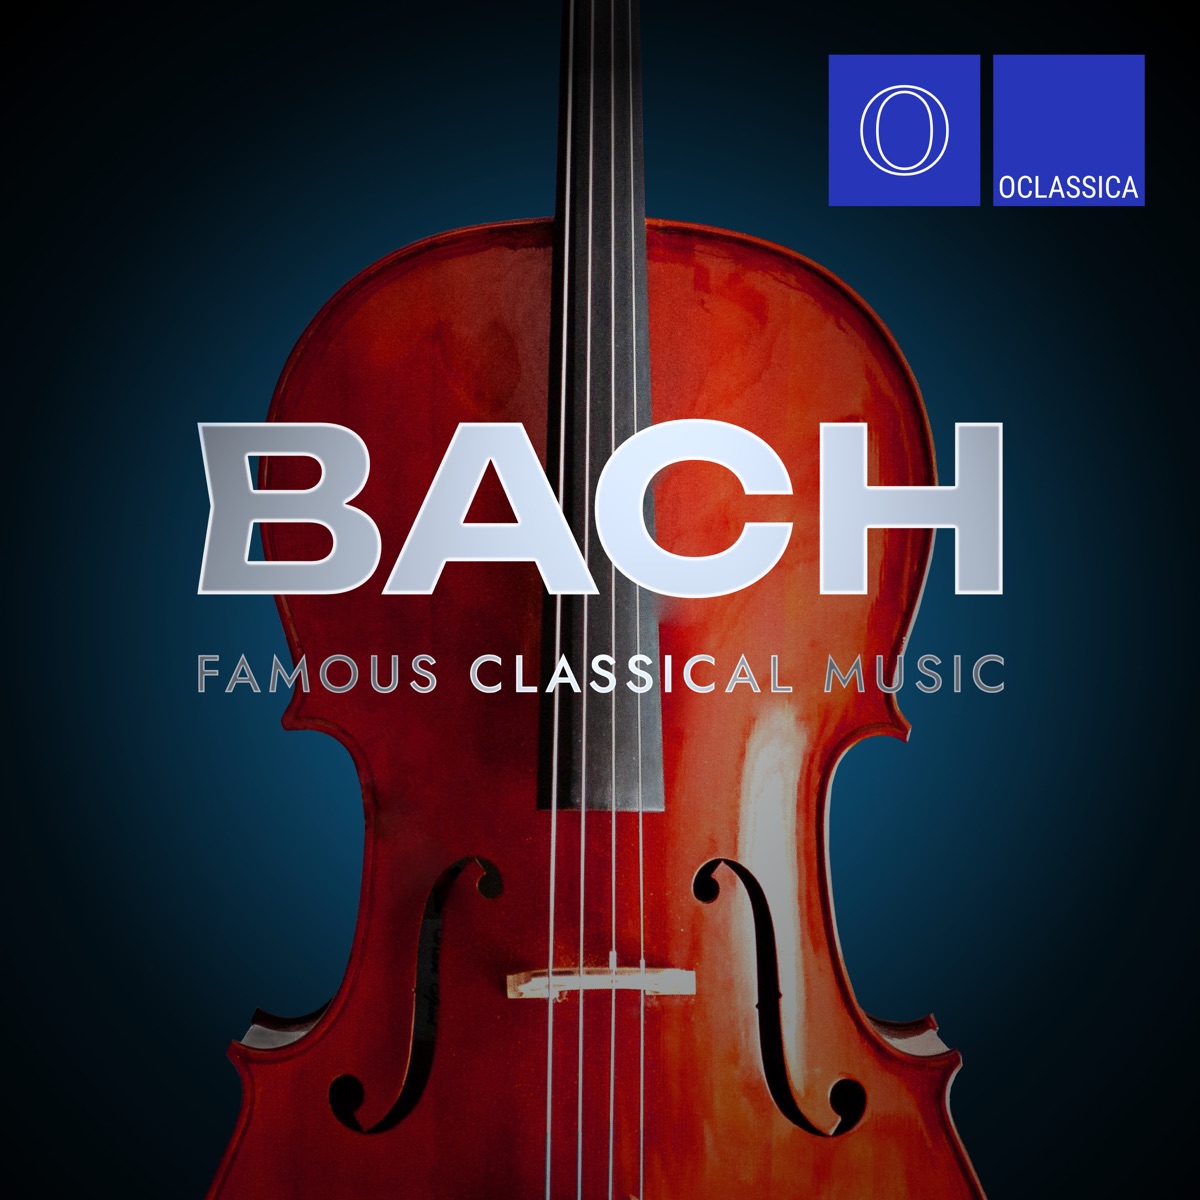 Bach: Famous Classical Music — álbum de Vários intérpretes — Apple Music